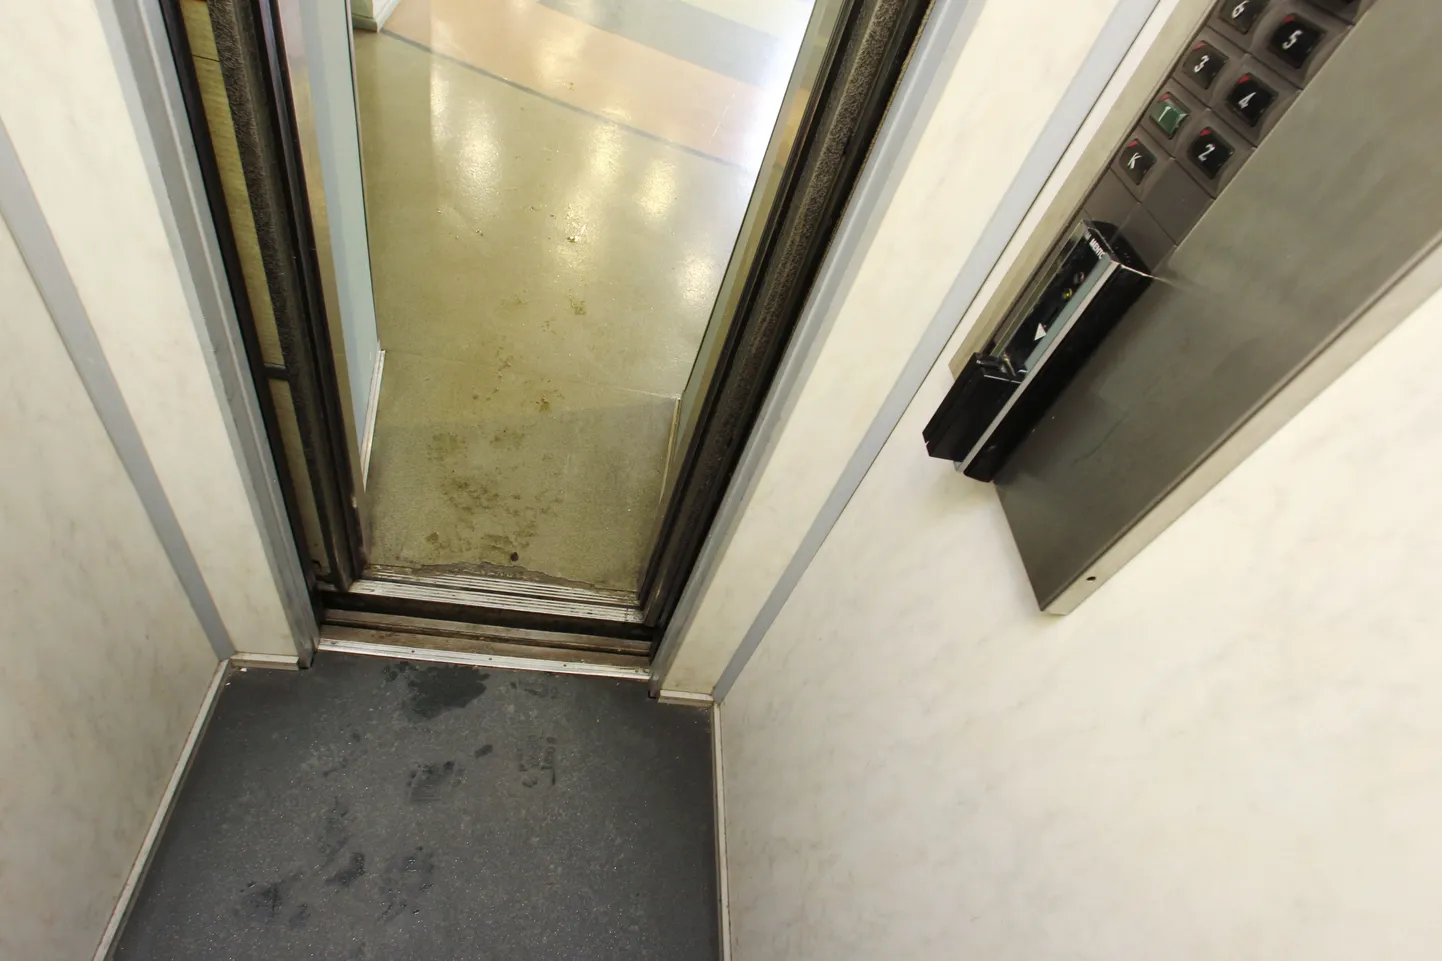 Statistikaametis kukkus lift koos maja külastajaga teiselt korruselt esimesele.